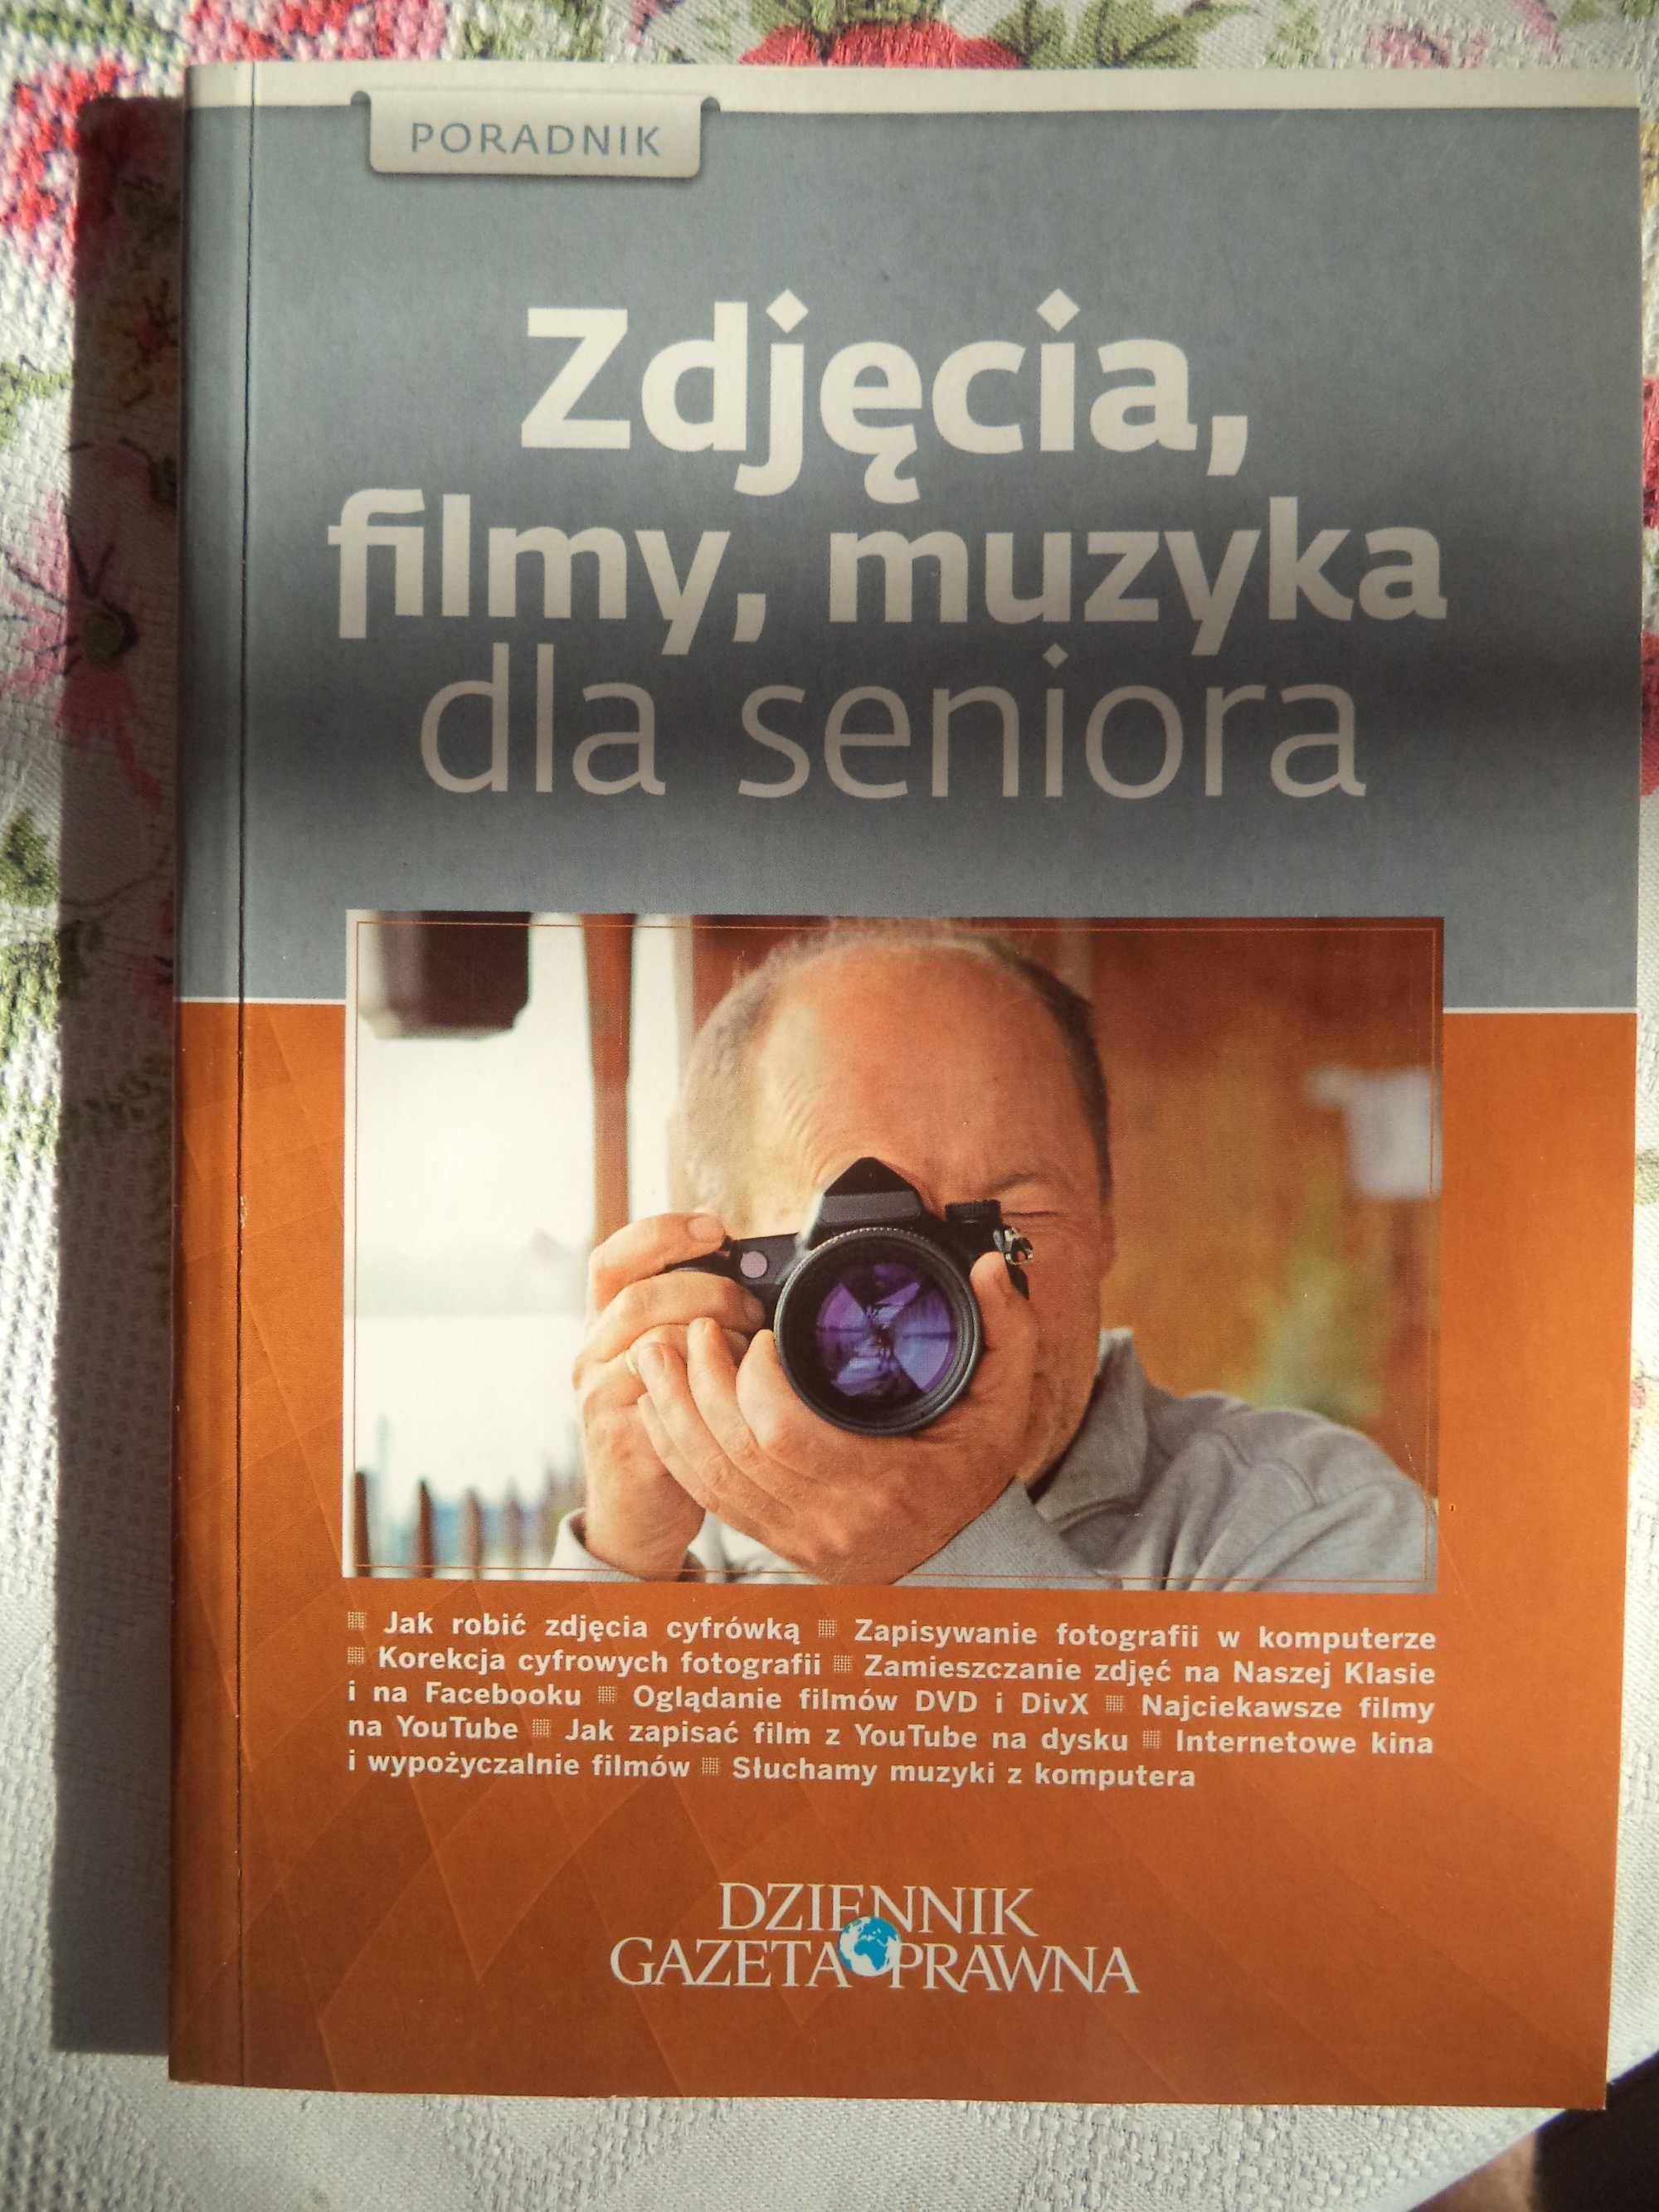 Zdjęcia, filmy, muzyka dla seriora. Poradnik. "Dziennik Gazeta Prawna"